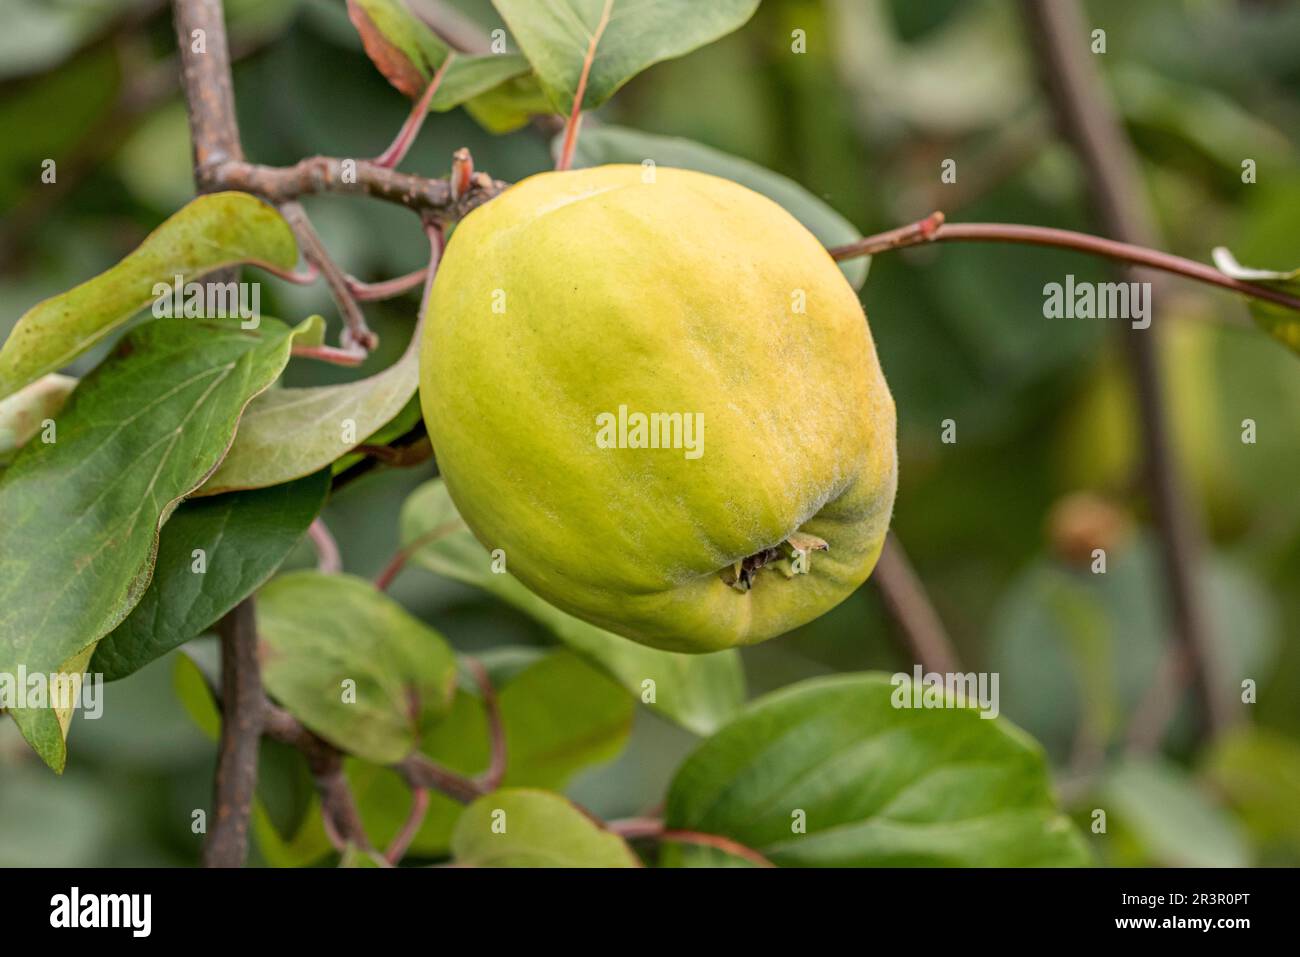 Common quince (Cydonia oblonga Izobilnaja), quince of cultivar Izobilnaja on a tree Stock Photo